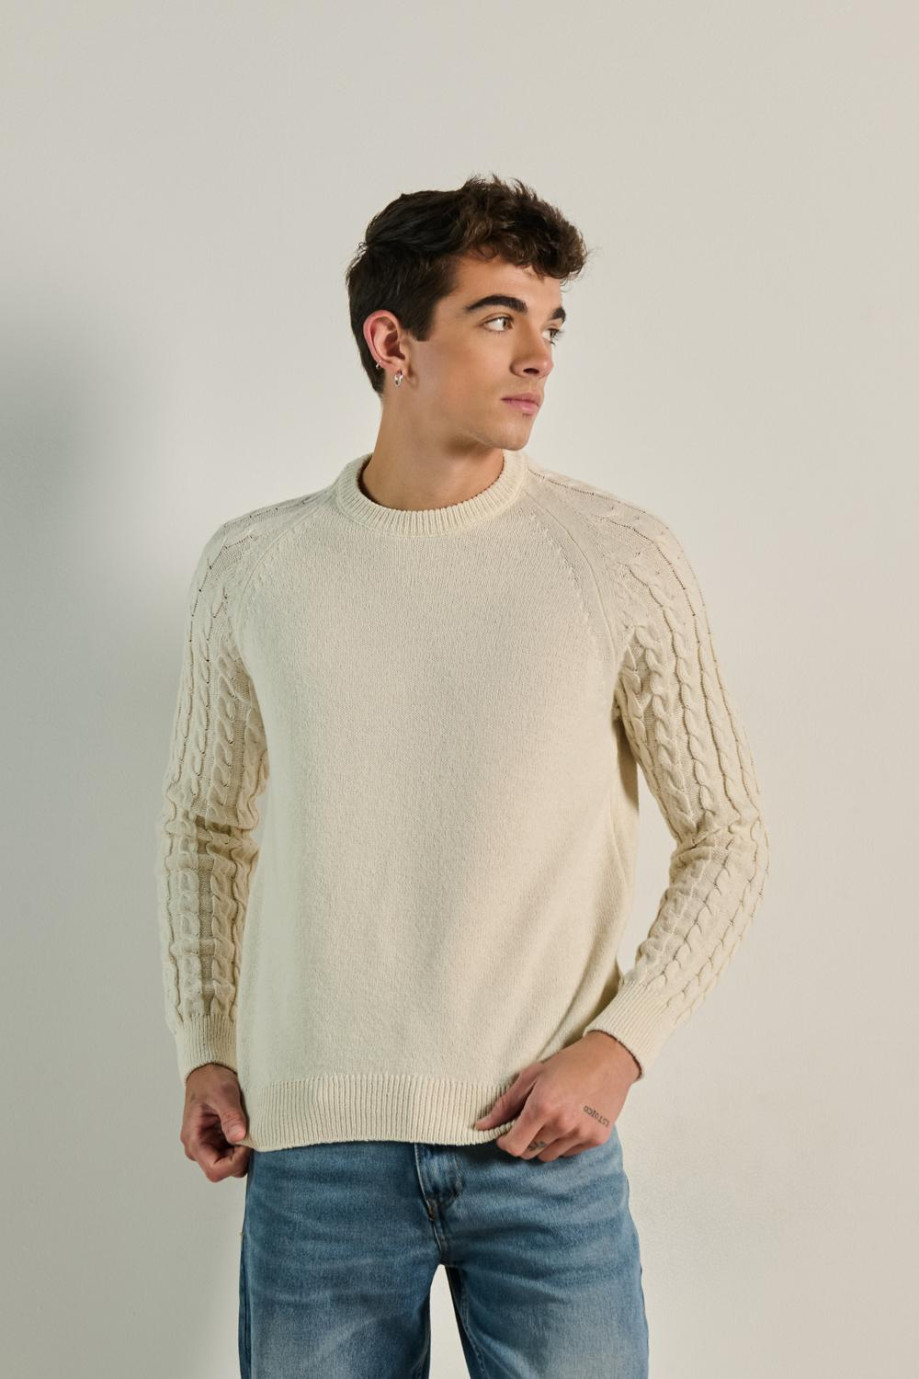 Suéter crema claro con texturas de trenzas y cuello redondo